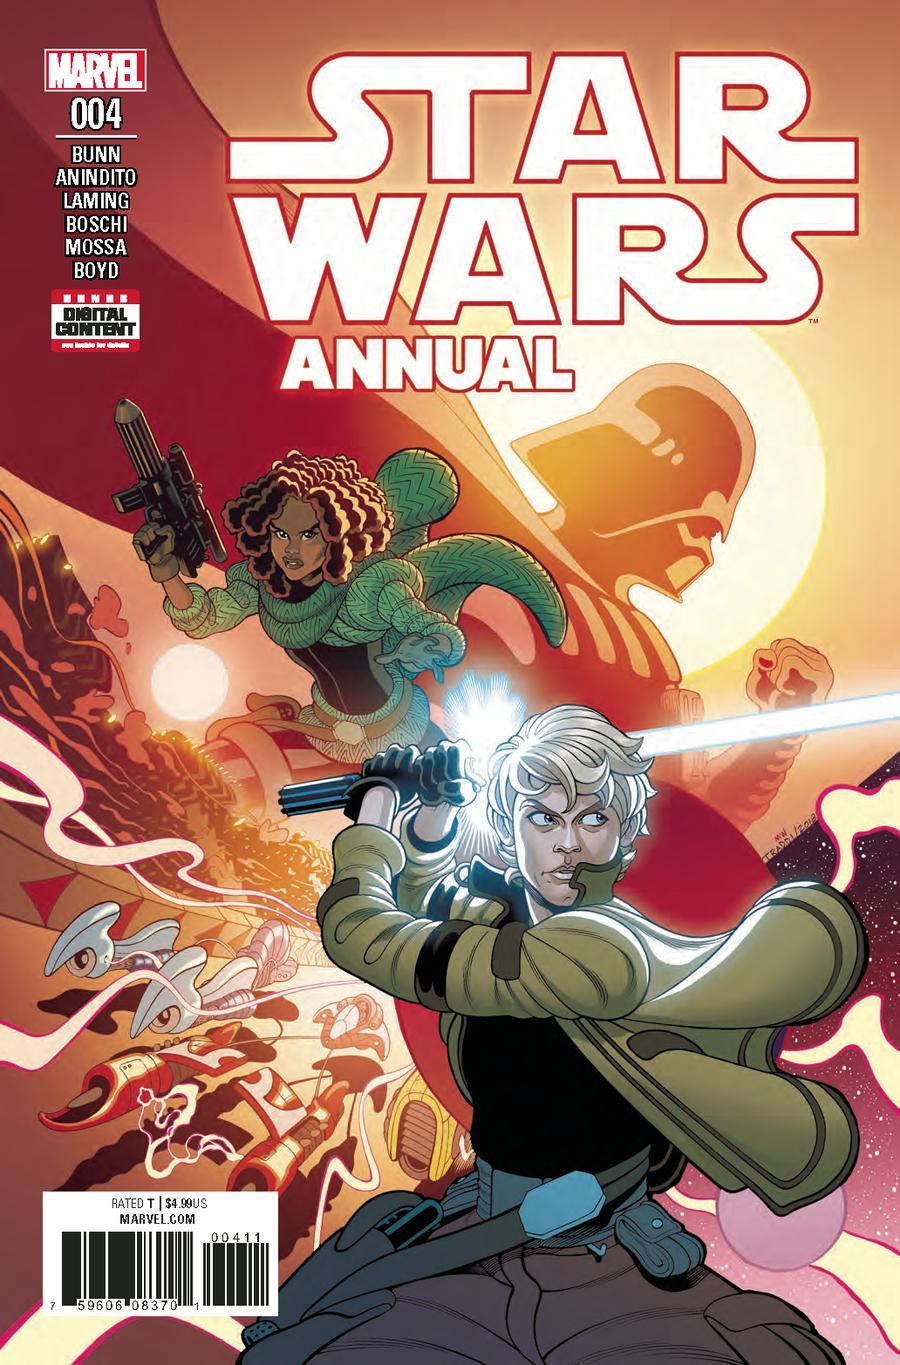 Star Wars (Marvel Comics) Vol. 4 Annual #4